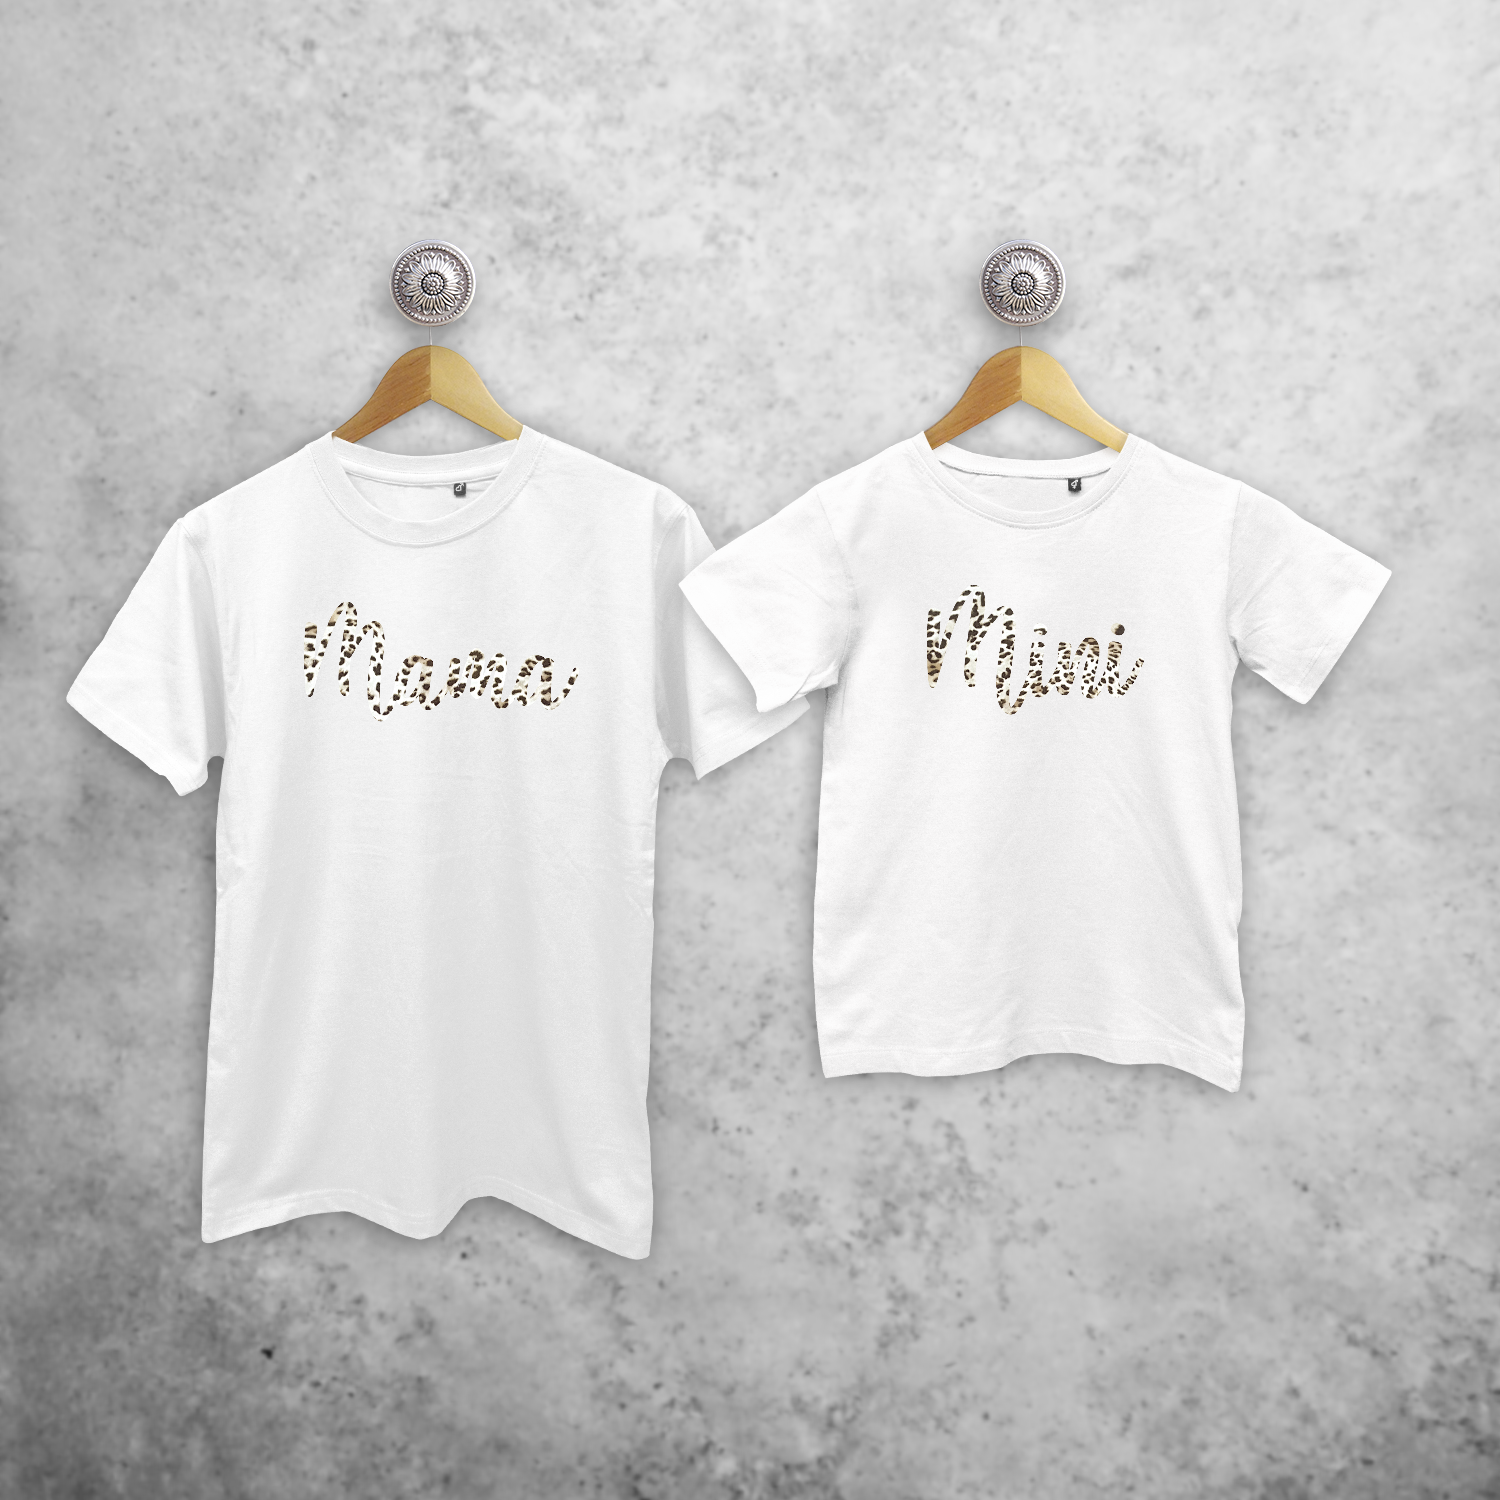 'Mama' & 'Mini' leopard matching shirts